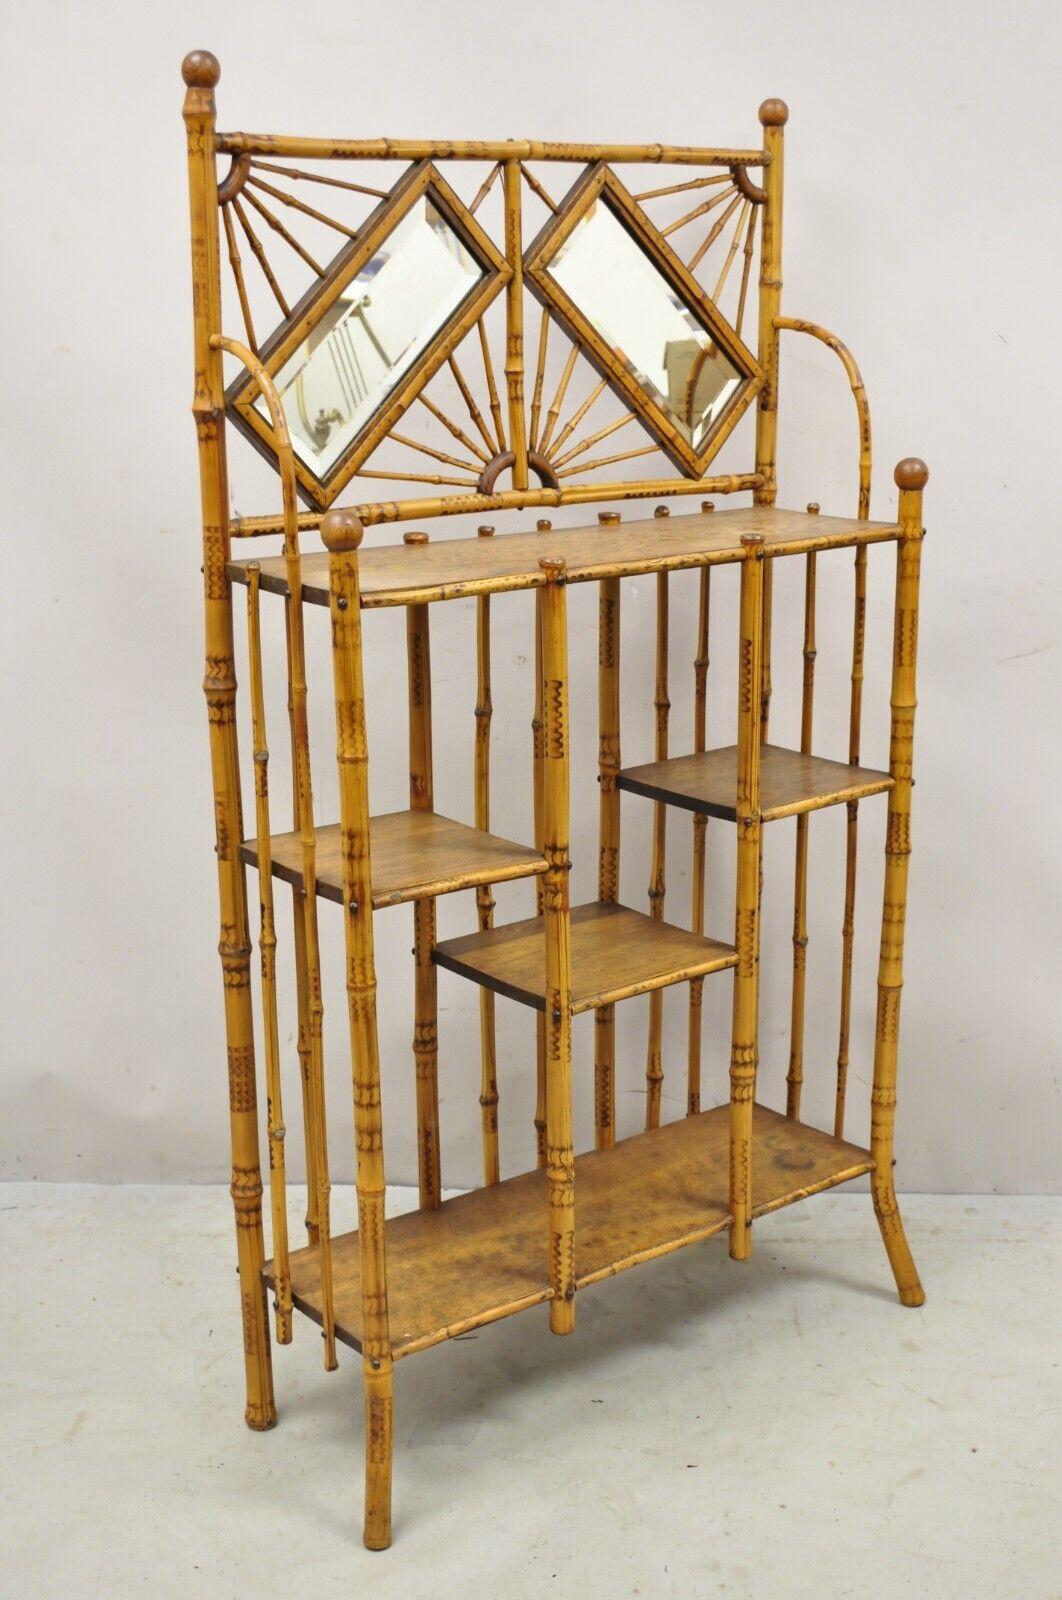 19. Jahrhundert Englisch Victorian Bamboo Stick und Ball Curio Regal Display Etagere w / Spiegel. Artikel verfügt über 2 abgeschrägte Glasspiegel, Bambus-Holz-Konstruktion, verziert Laubsägearbeiten Stick und Ball-Design, 5 hölzerne Regale, sehr